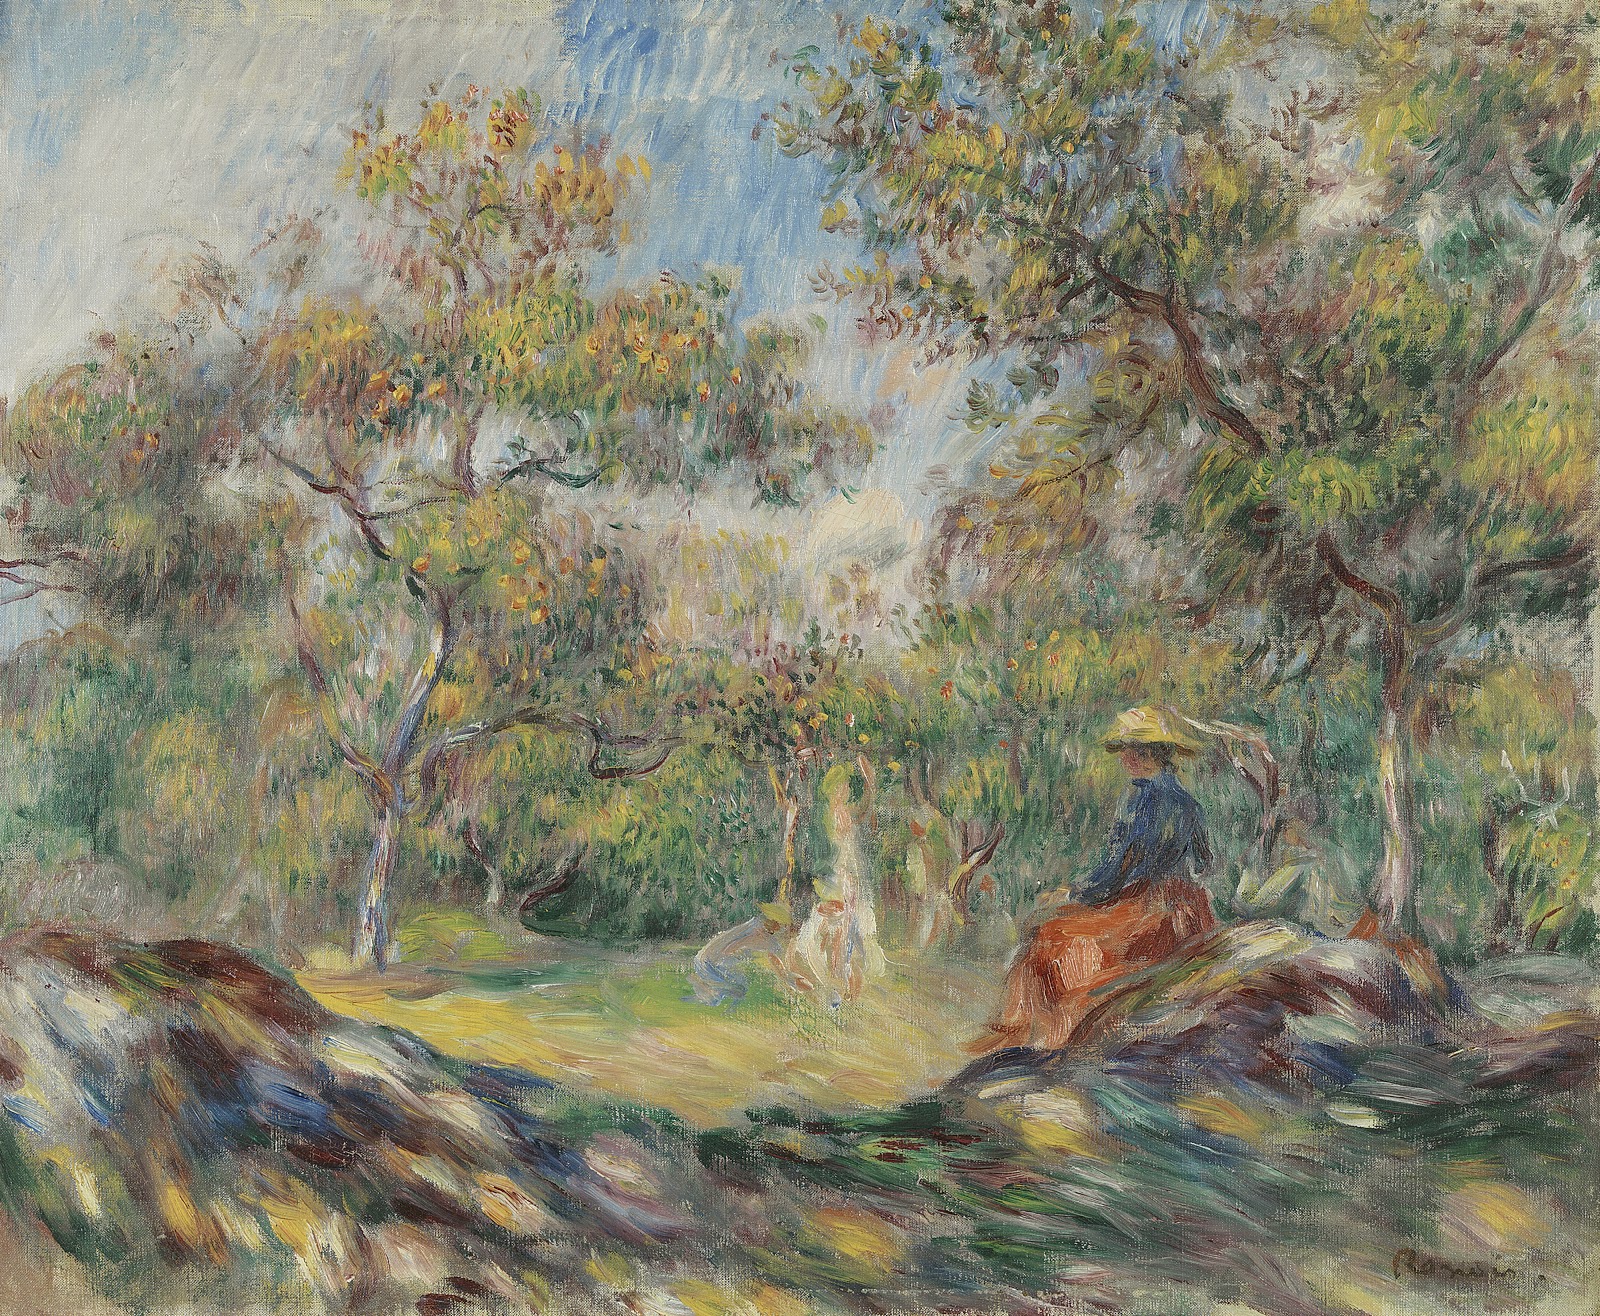 Pierre+Auguste+Renoir-1841-1-19 (487).jpg